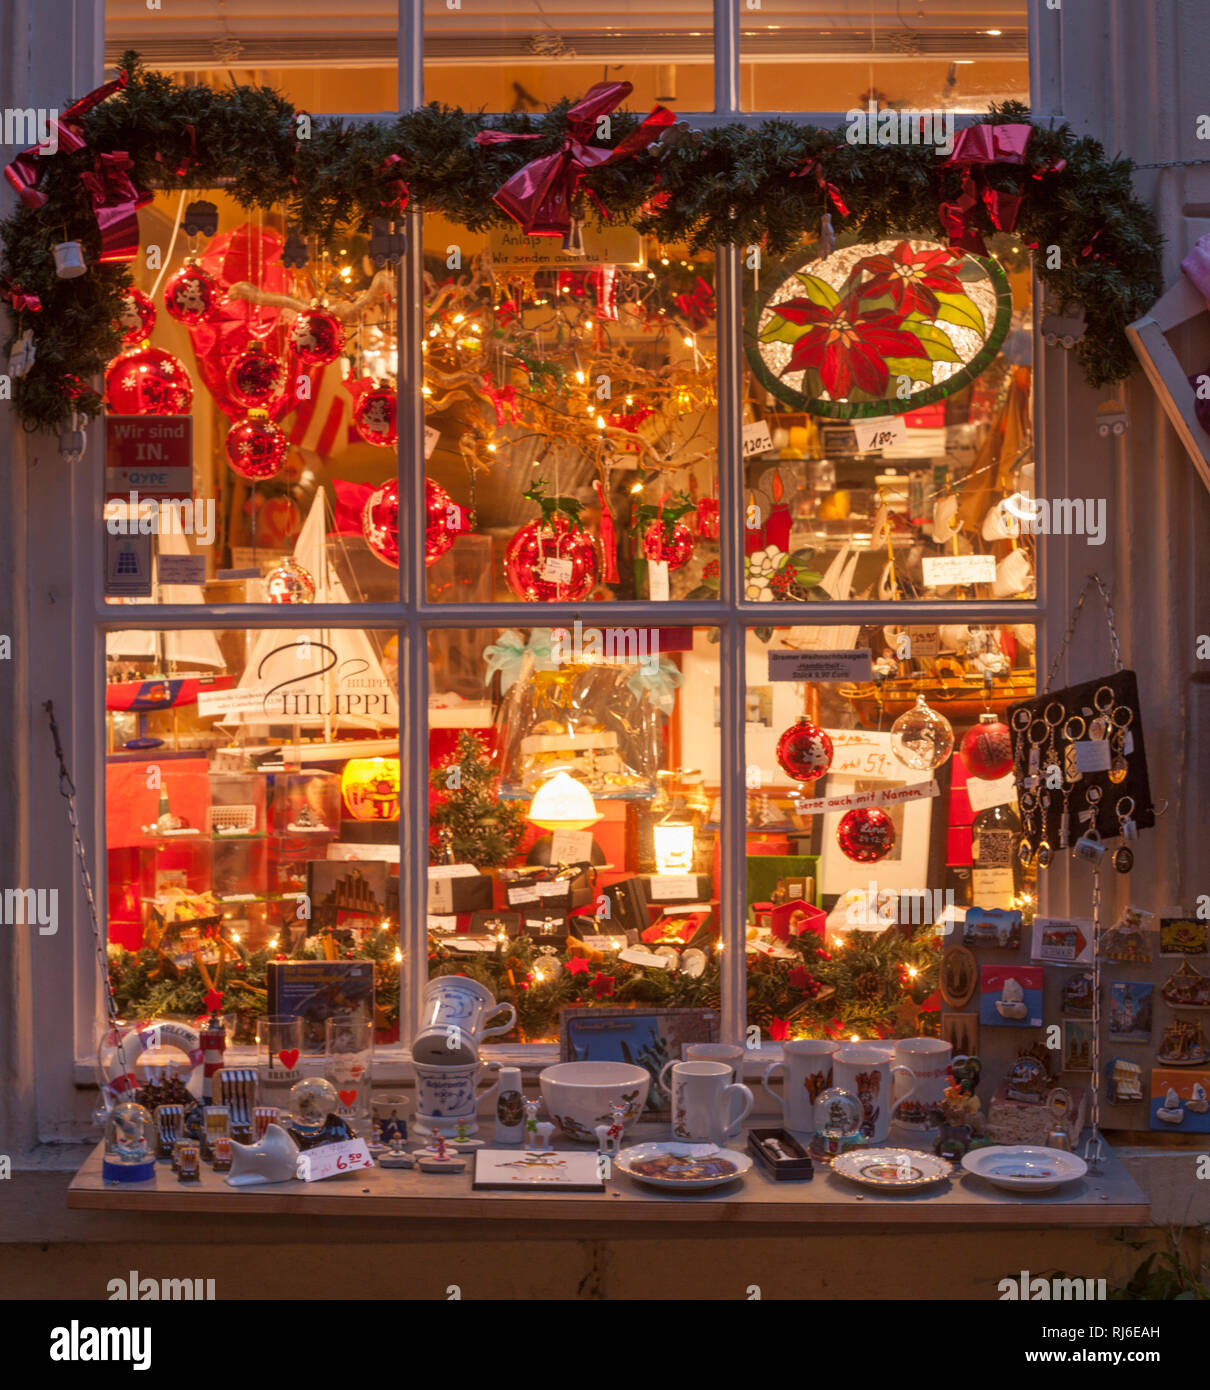 Weihnachtsbeleuchtung , Schaufenster, Schnoorviertel, Bremen, Deutschland, Europa Stock Photo